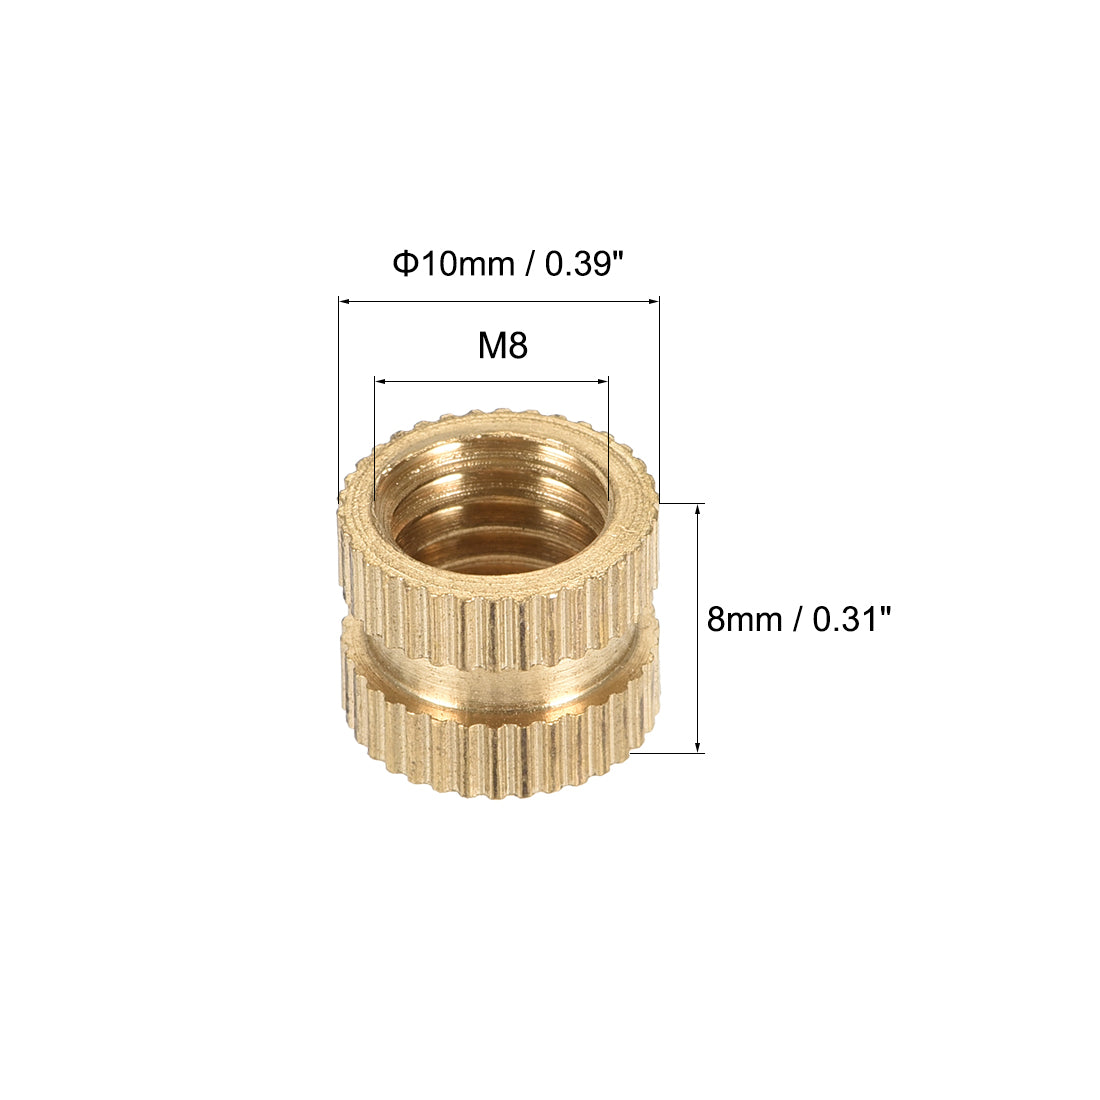 uxcell Uxcell Knurled Insert Nuts, M8 x 8mm(L) x 10mm(OD) Female Thread Brass Embedment Assortment Kit, 5 Pcs